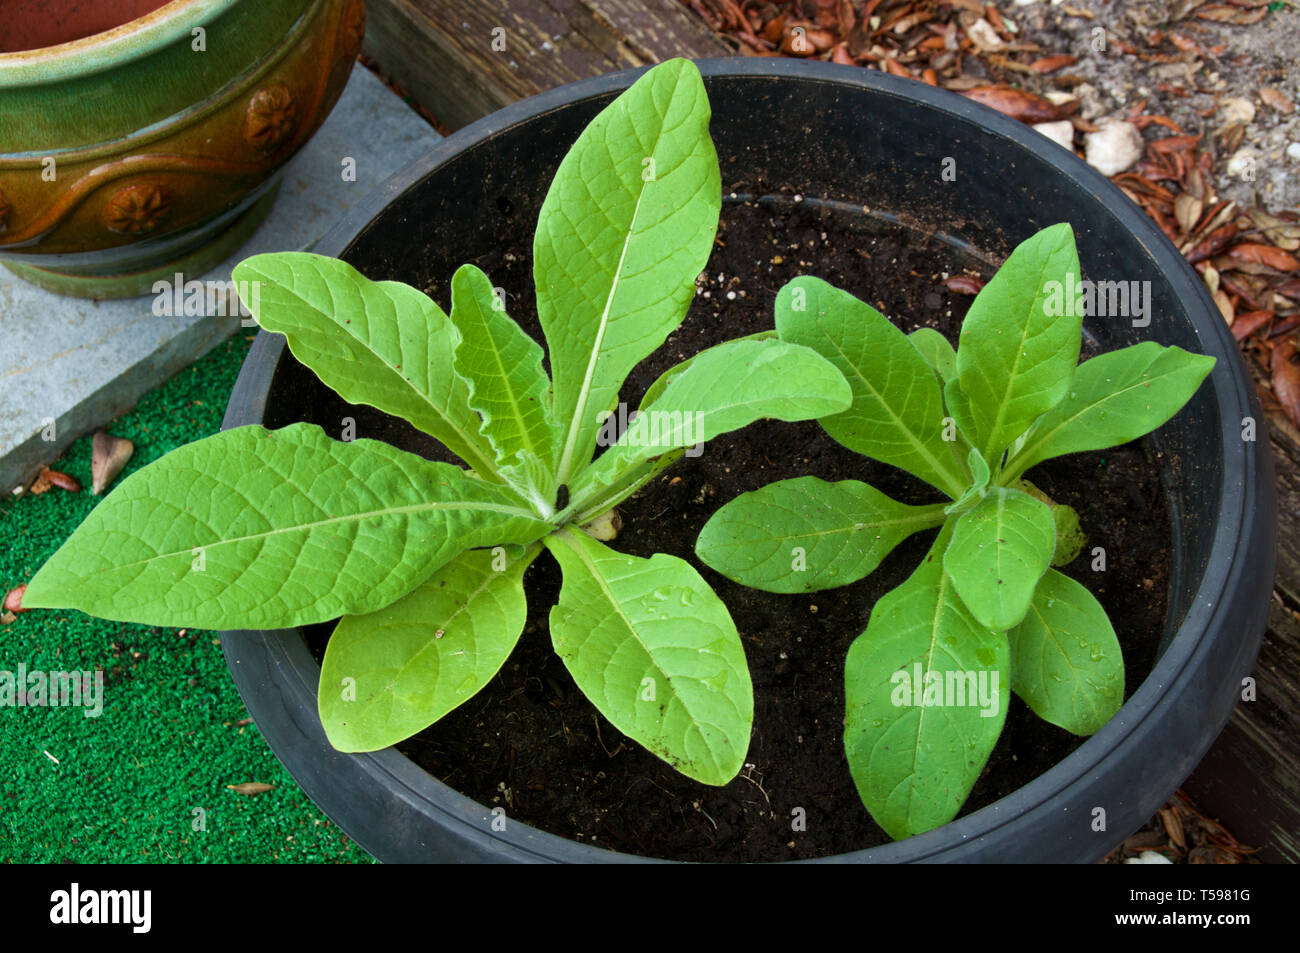 Mit Blick auf junge nicotiana alata Pflanzen im Topf im Garten wächst, auch in der Nacht bekannt blühenden Jasmin Tabak. Stockfoto